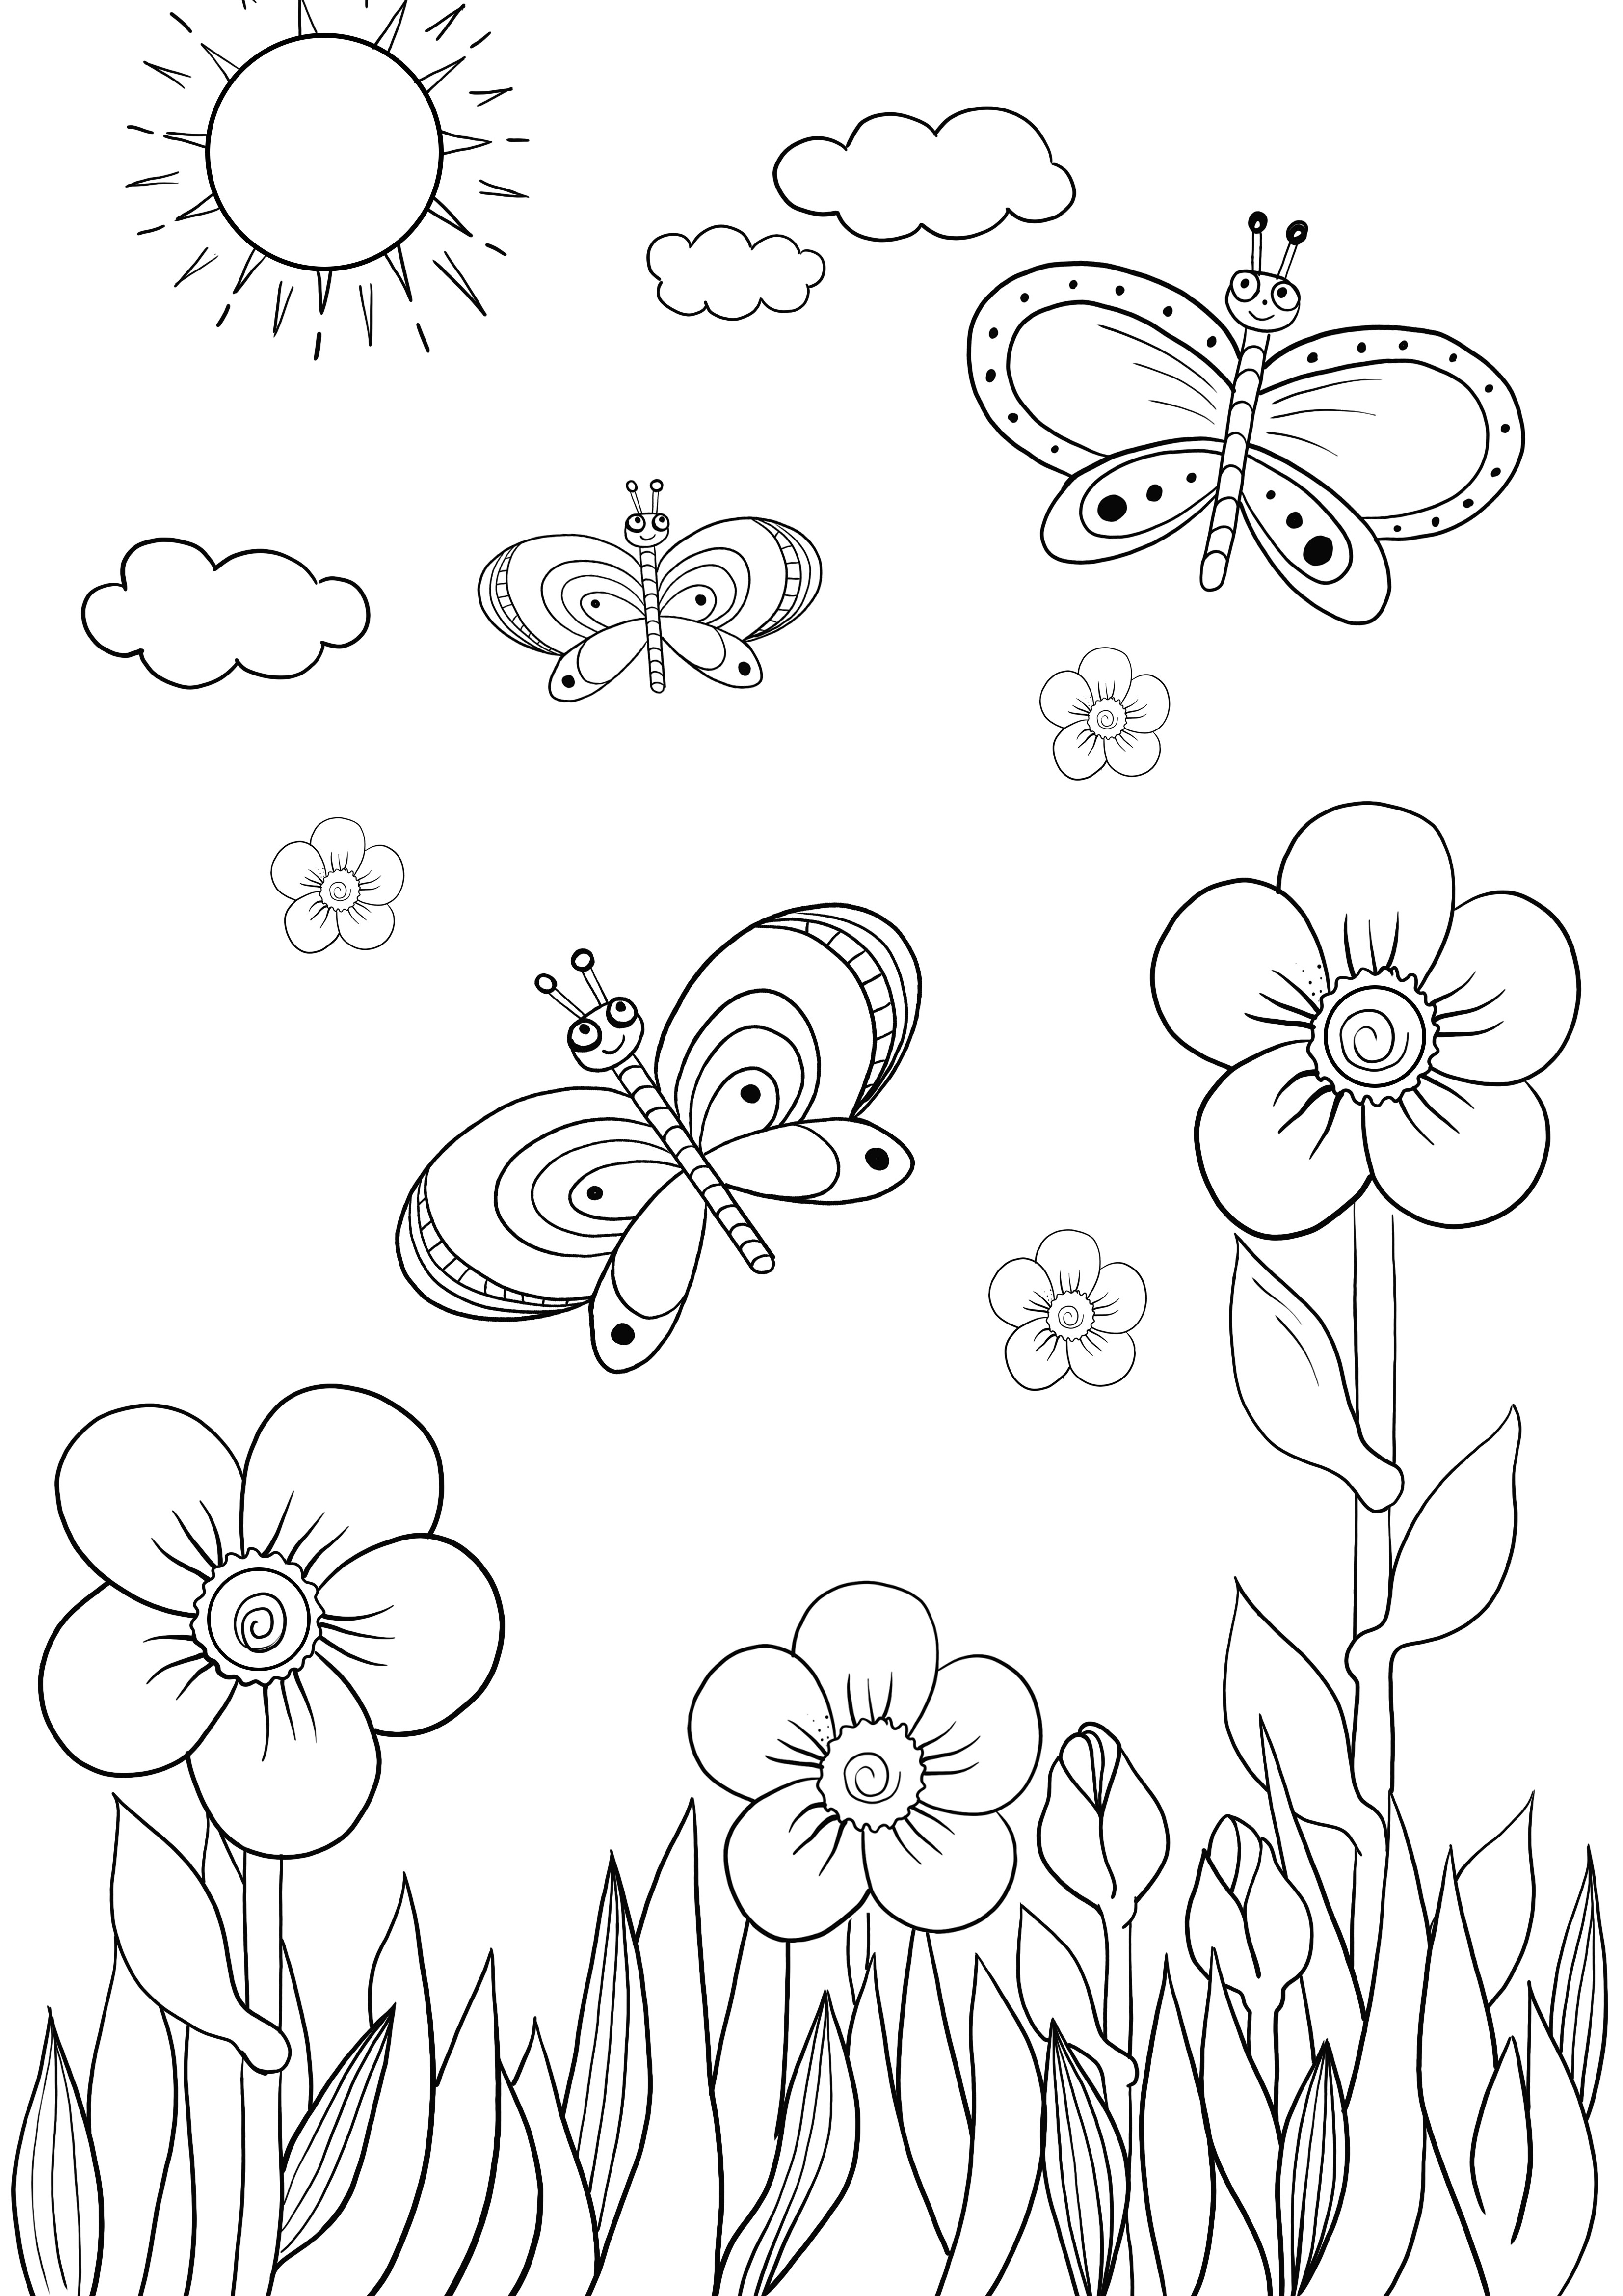 halaman mewarnai mudah bunga dan kupu-kupu gratis